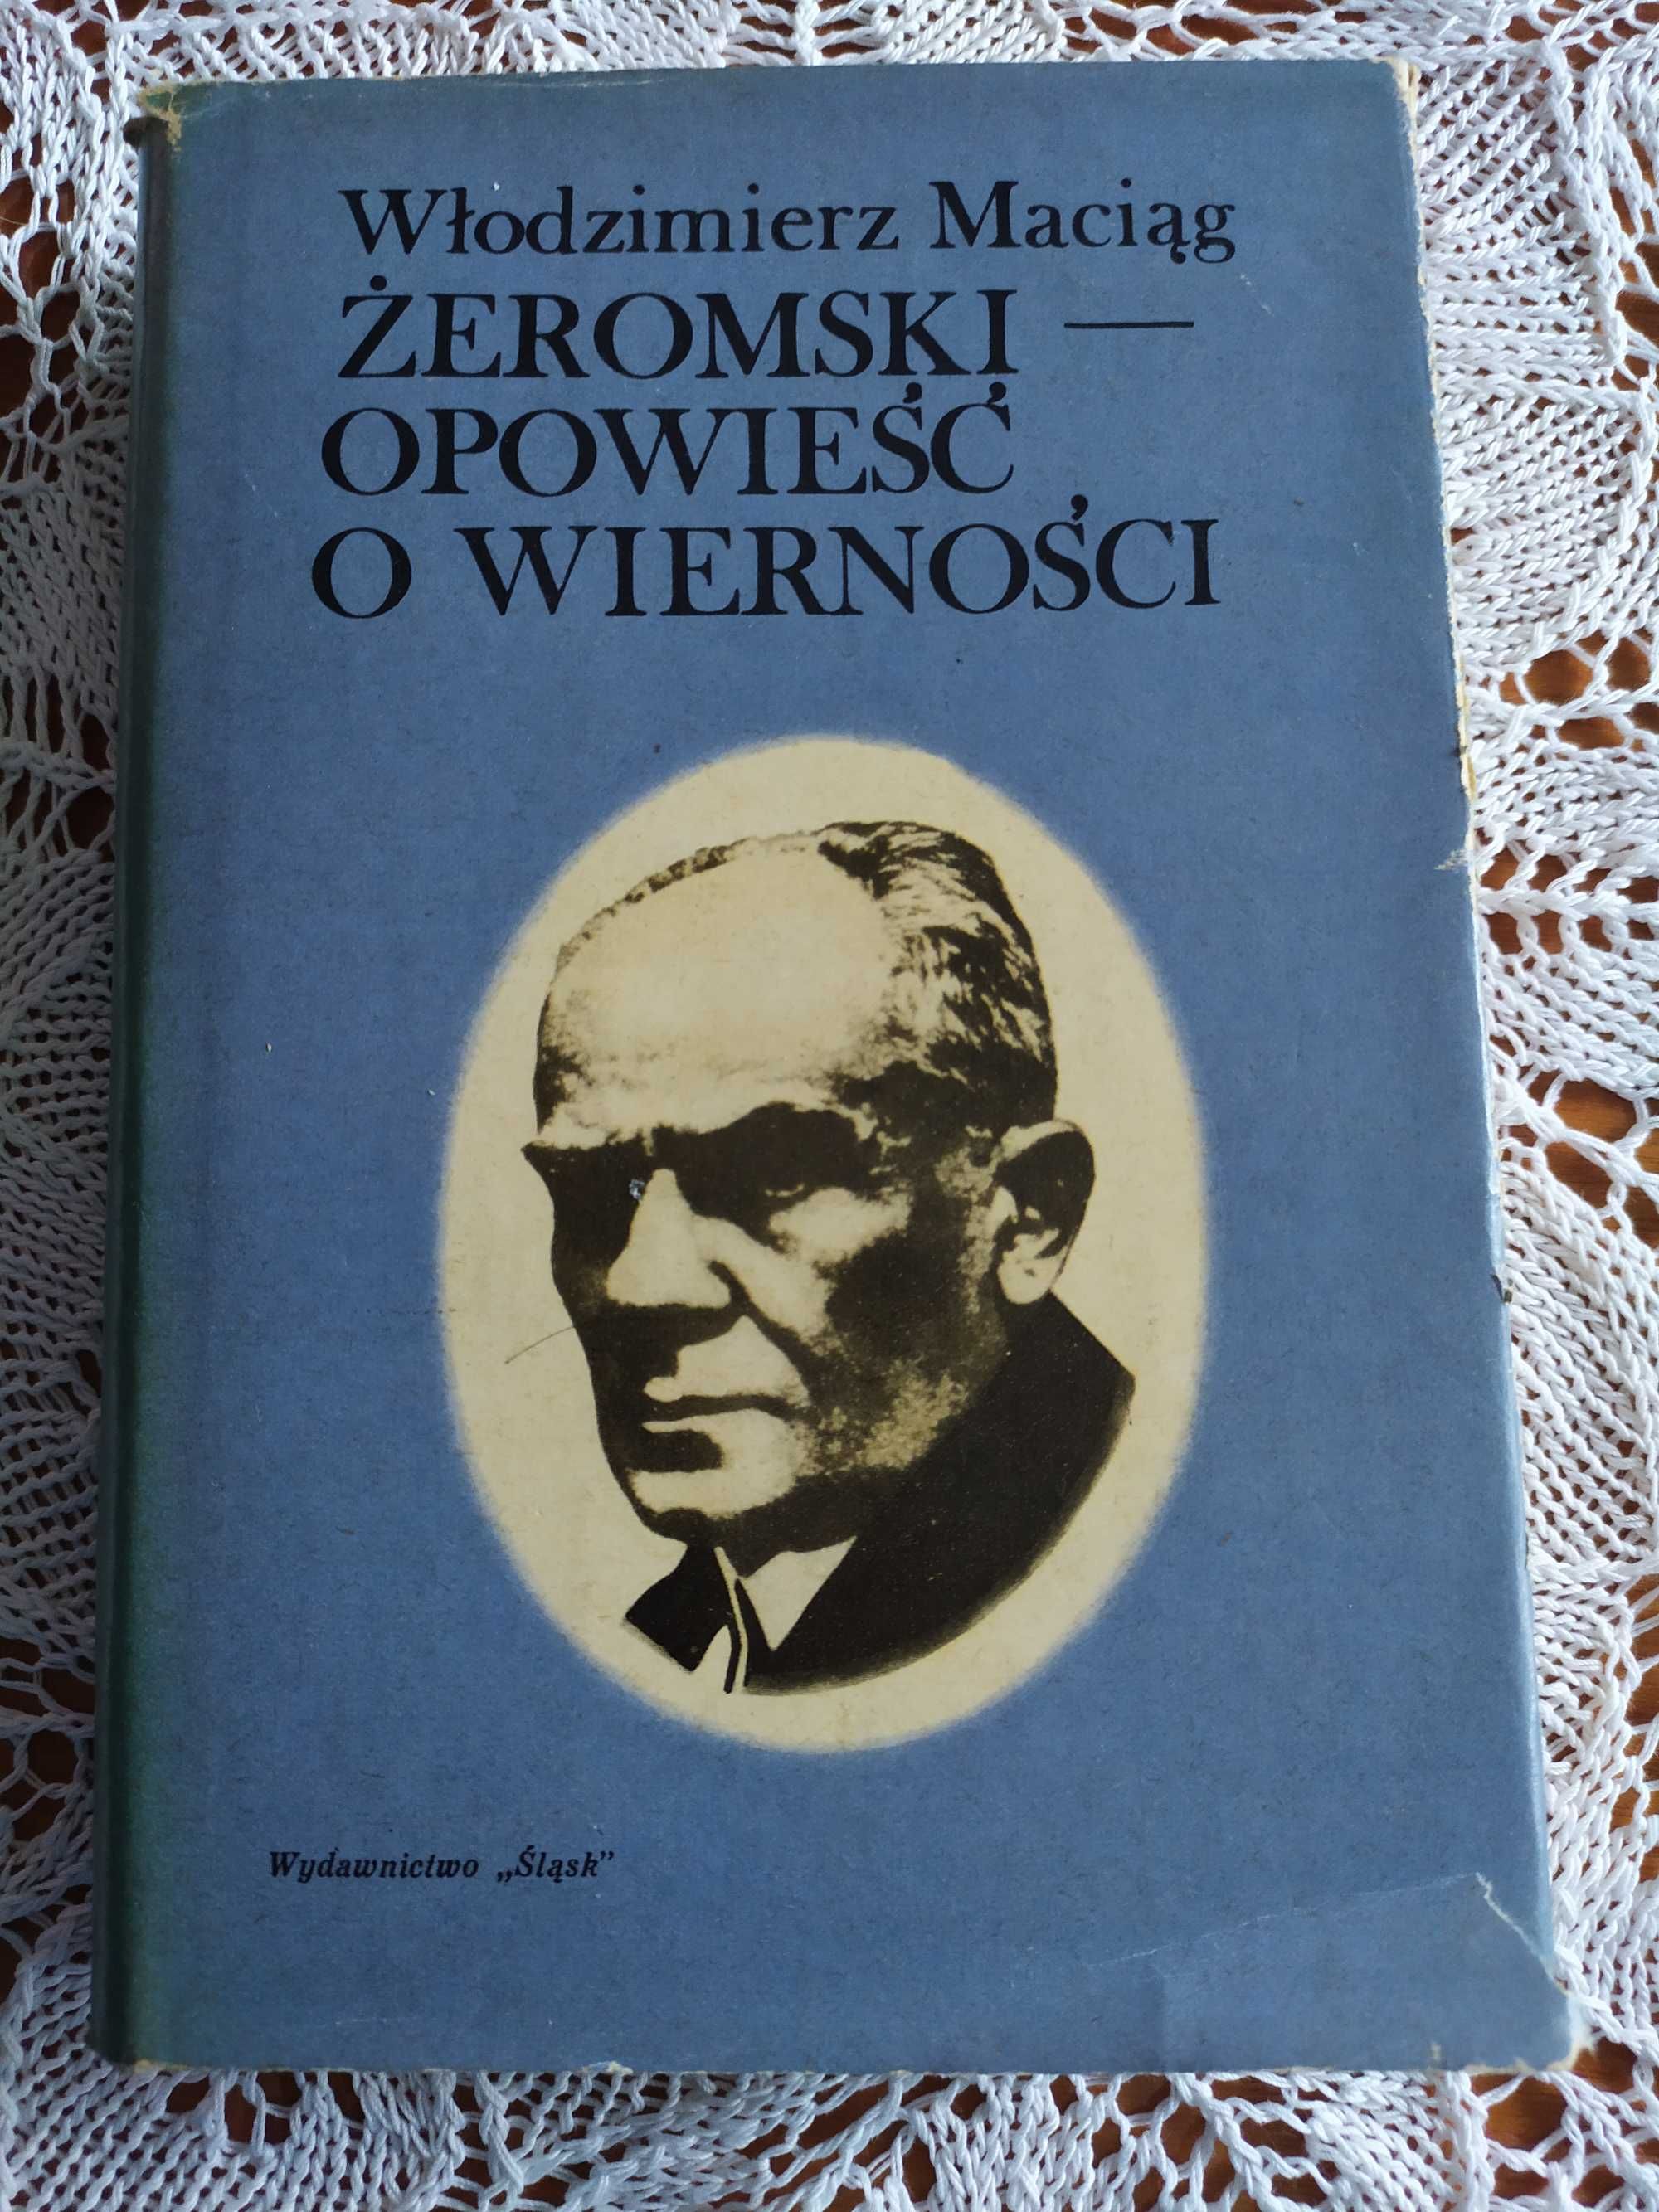 Żeromski - opowieść o wierności Włodzimierz Maciąg, biografia